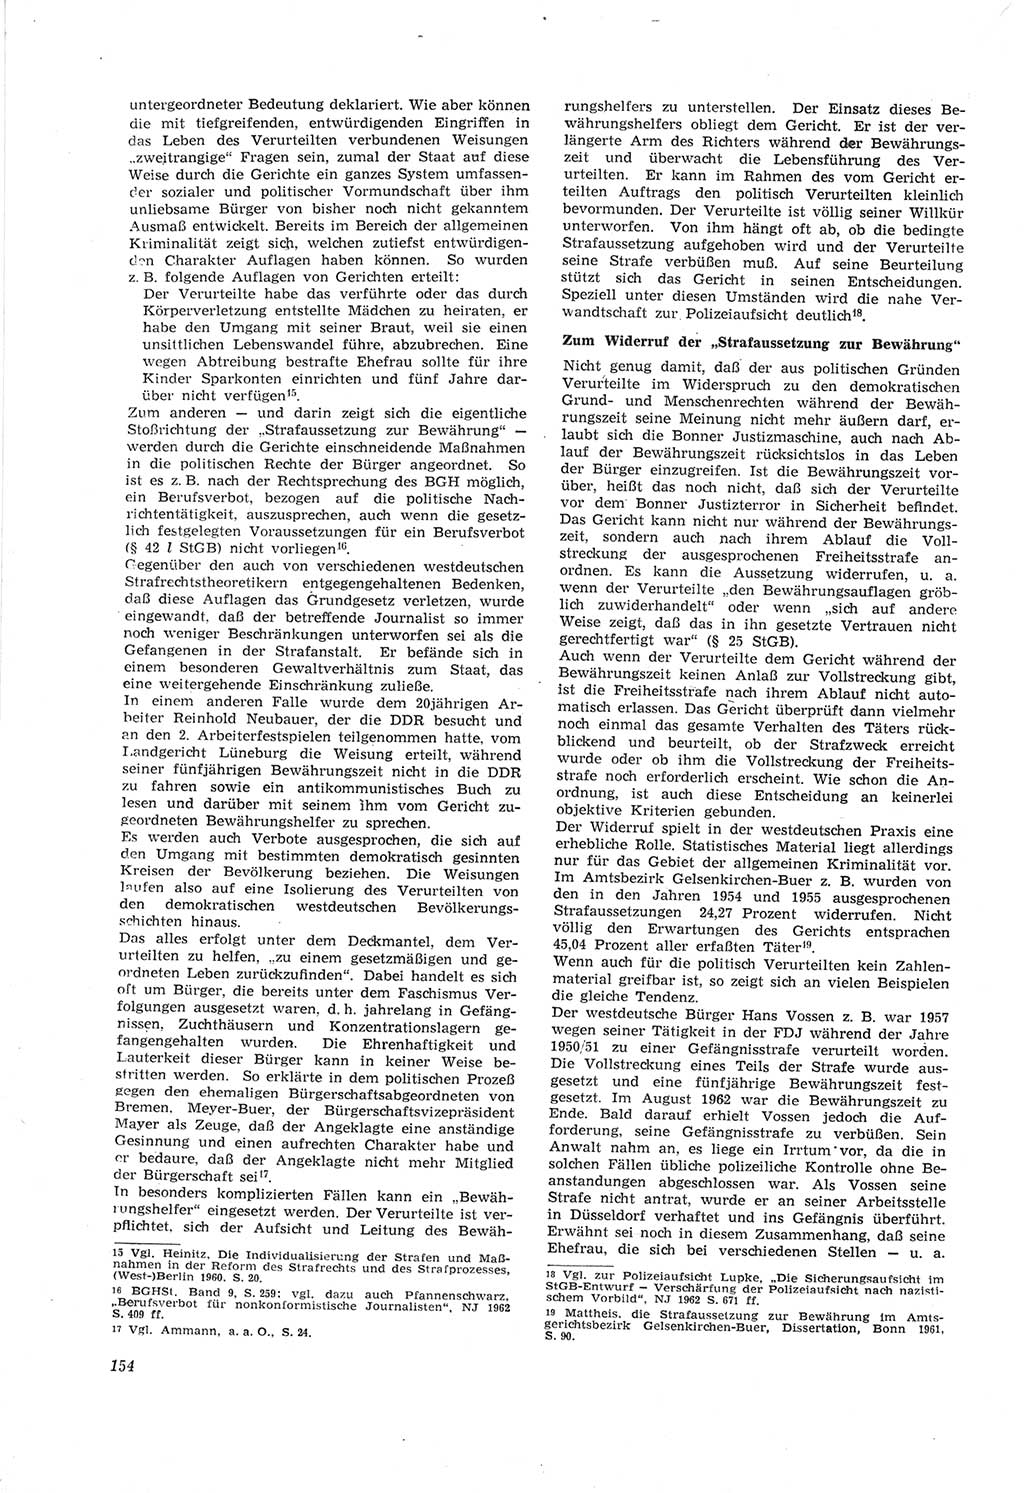 Neue Justiz (NJ), Zeitschrift für Recht und Rechtswissenschaft [Deutsche Demokratische Republik (DDR)], 18. Jahrgang 1964, Seite 154 (NJ DDR 1964, S. 154)